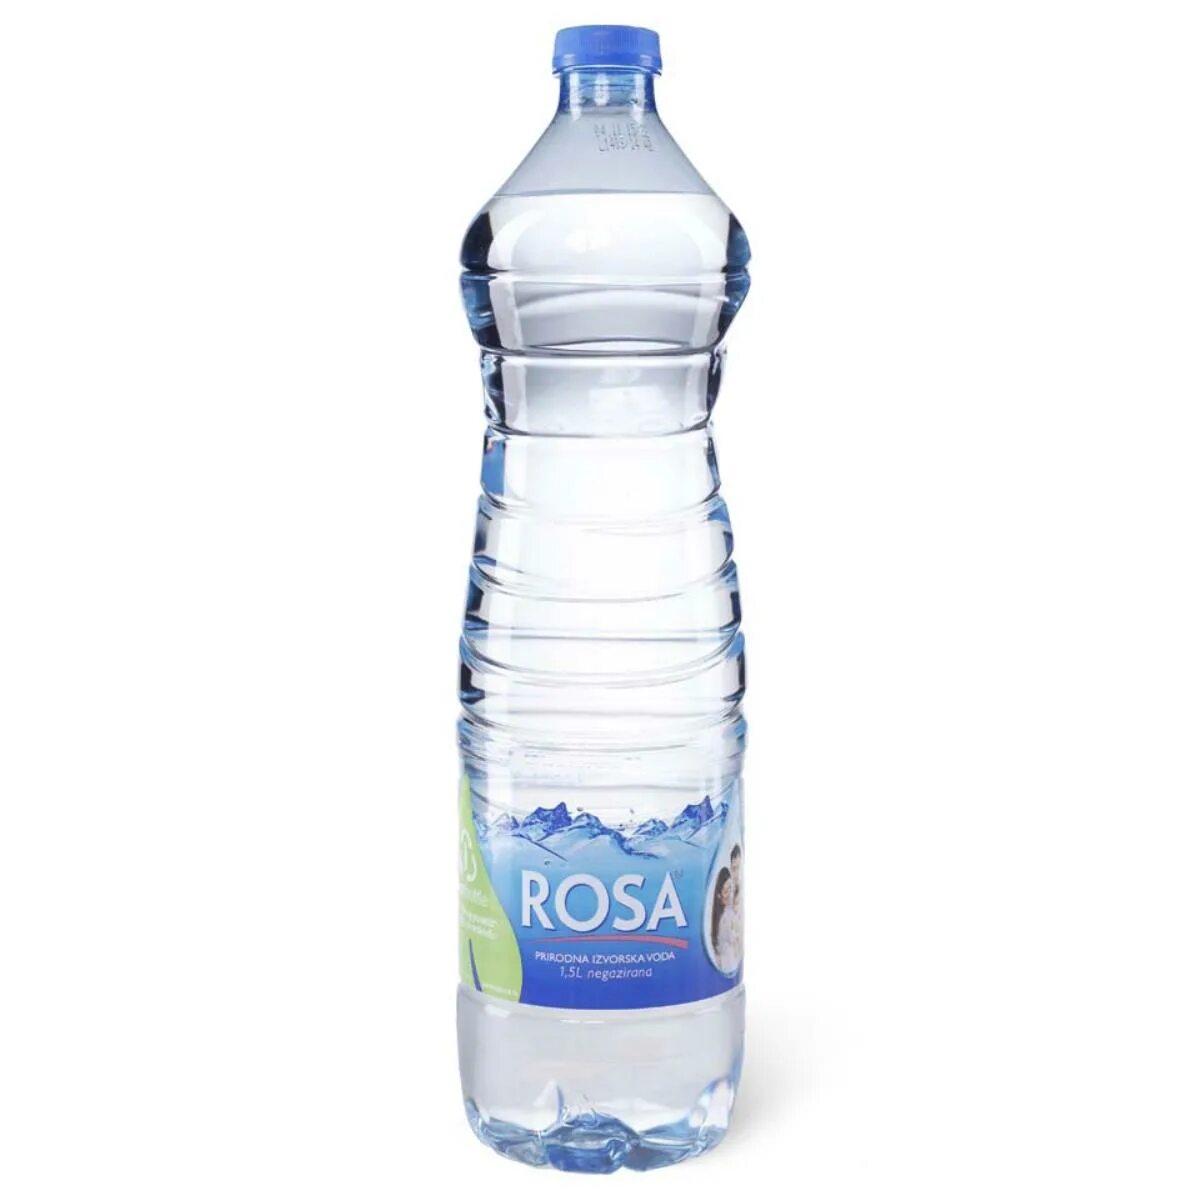 Вода хозяйственная. Вода питьевая роса. Бутылка для воды роса. Вода питьевая 5 л роса. Вода Rosa Сербия.